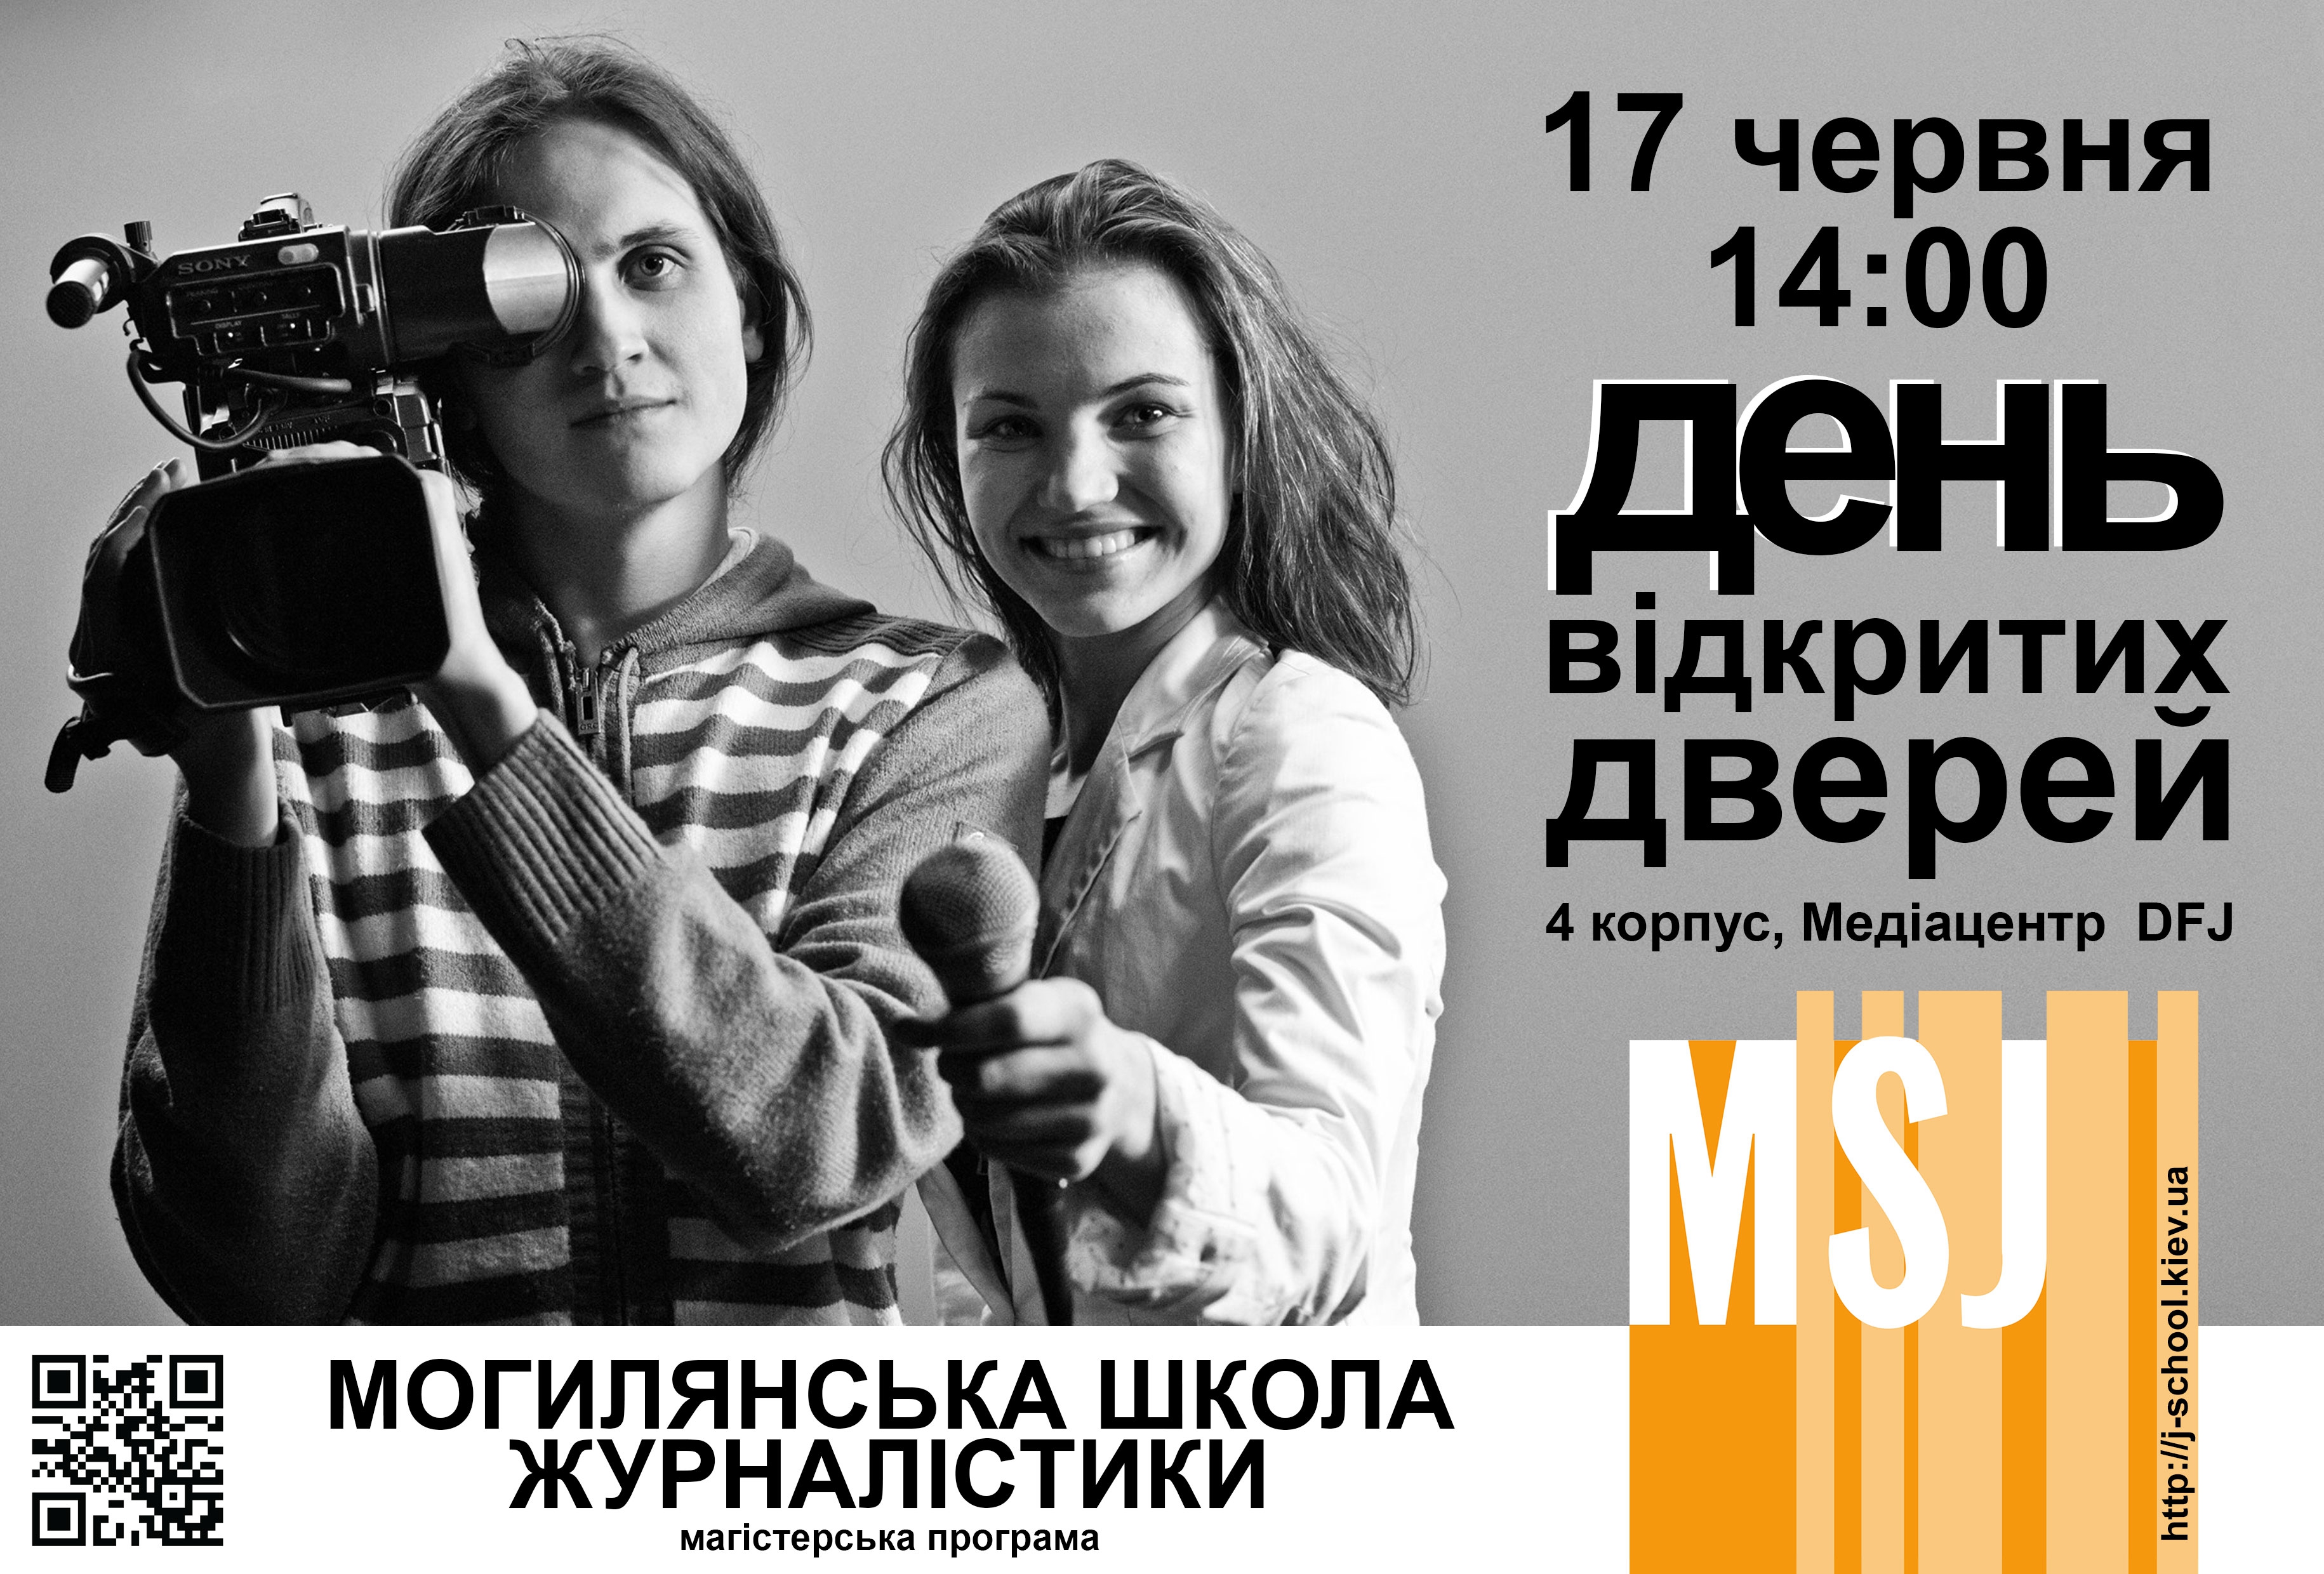 Могилянська школа журналістики запрошує на День відкритих дверей